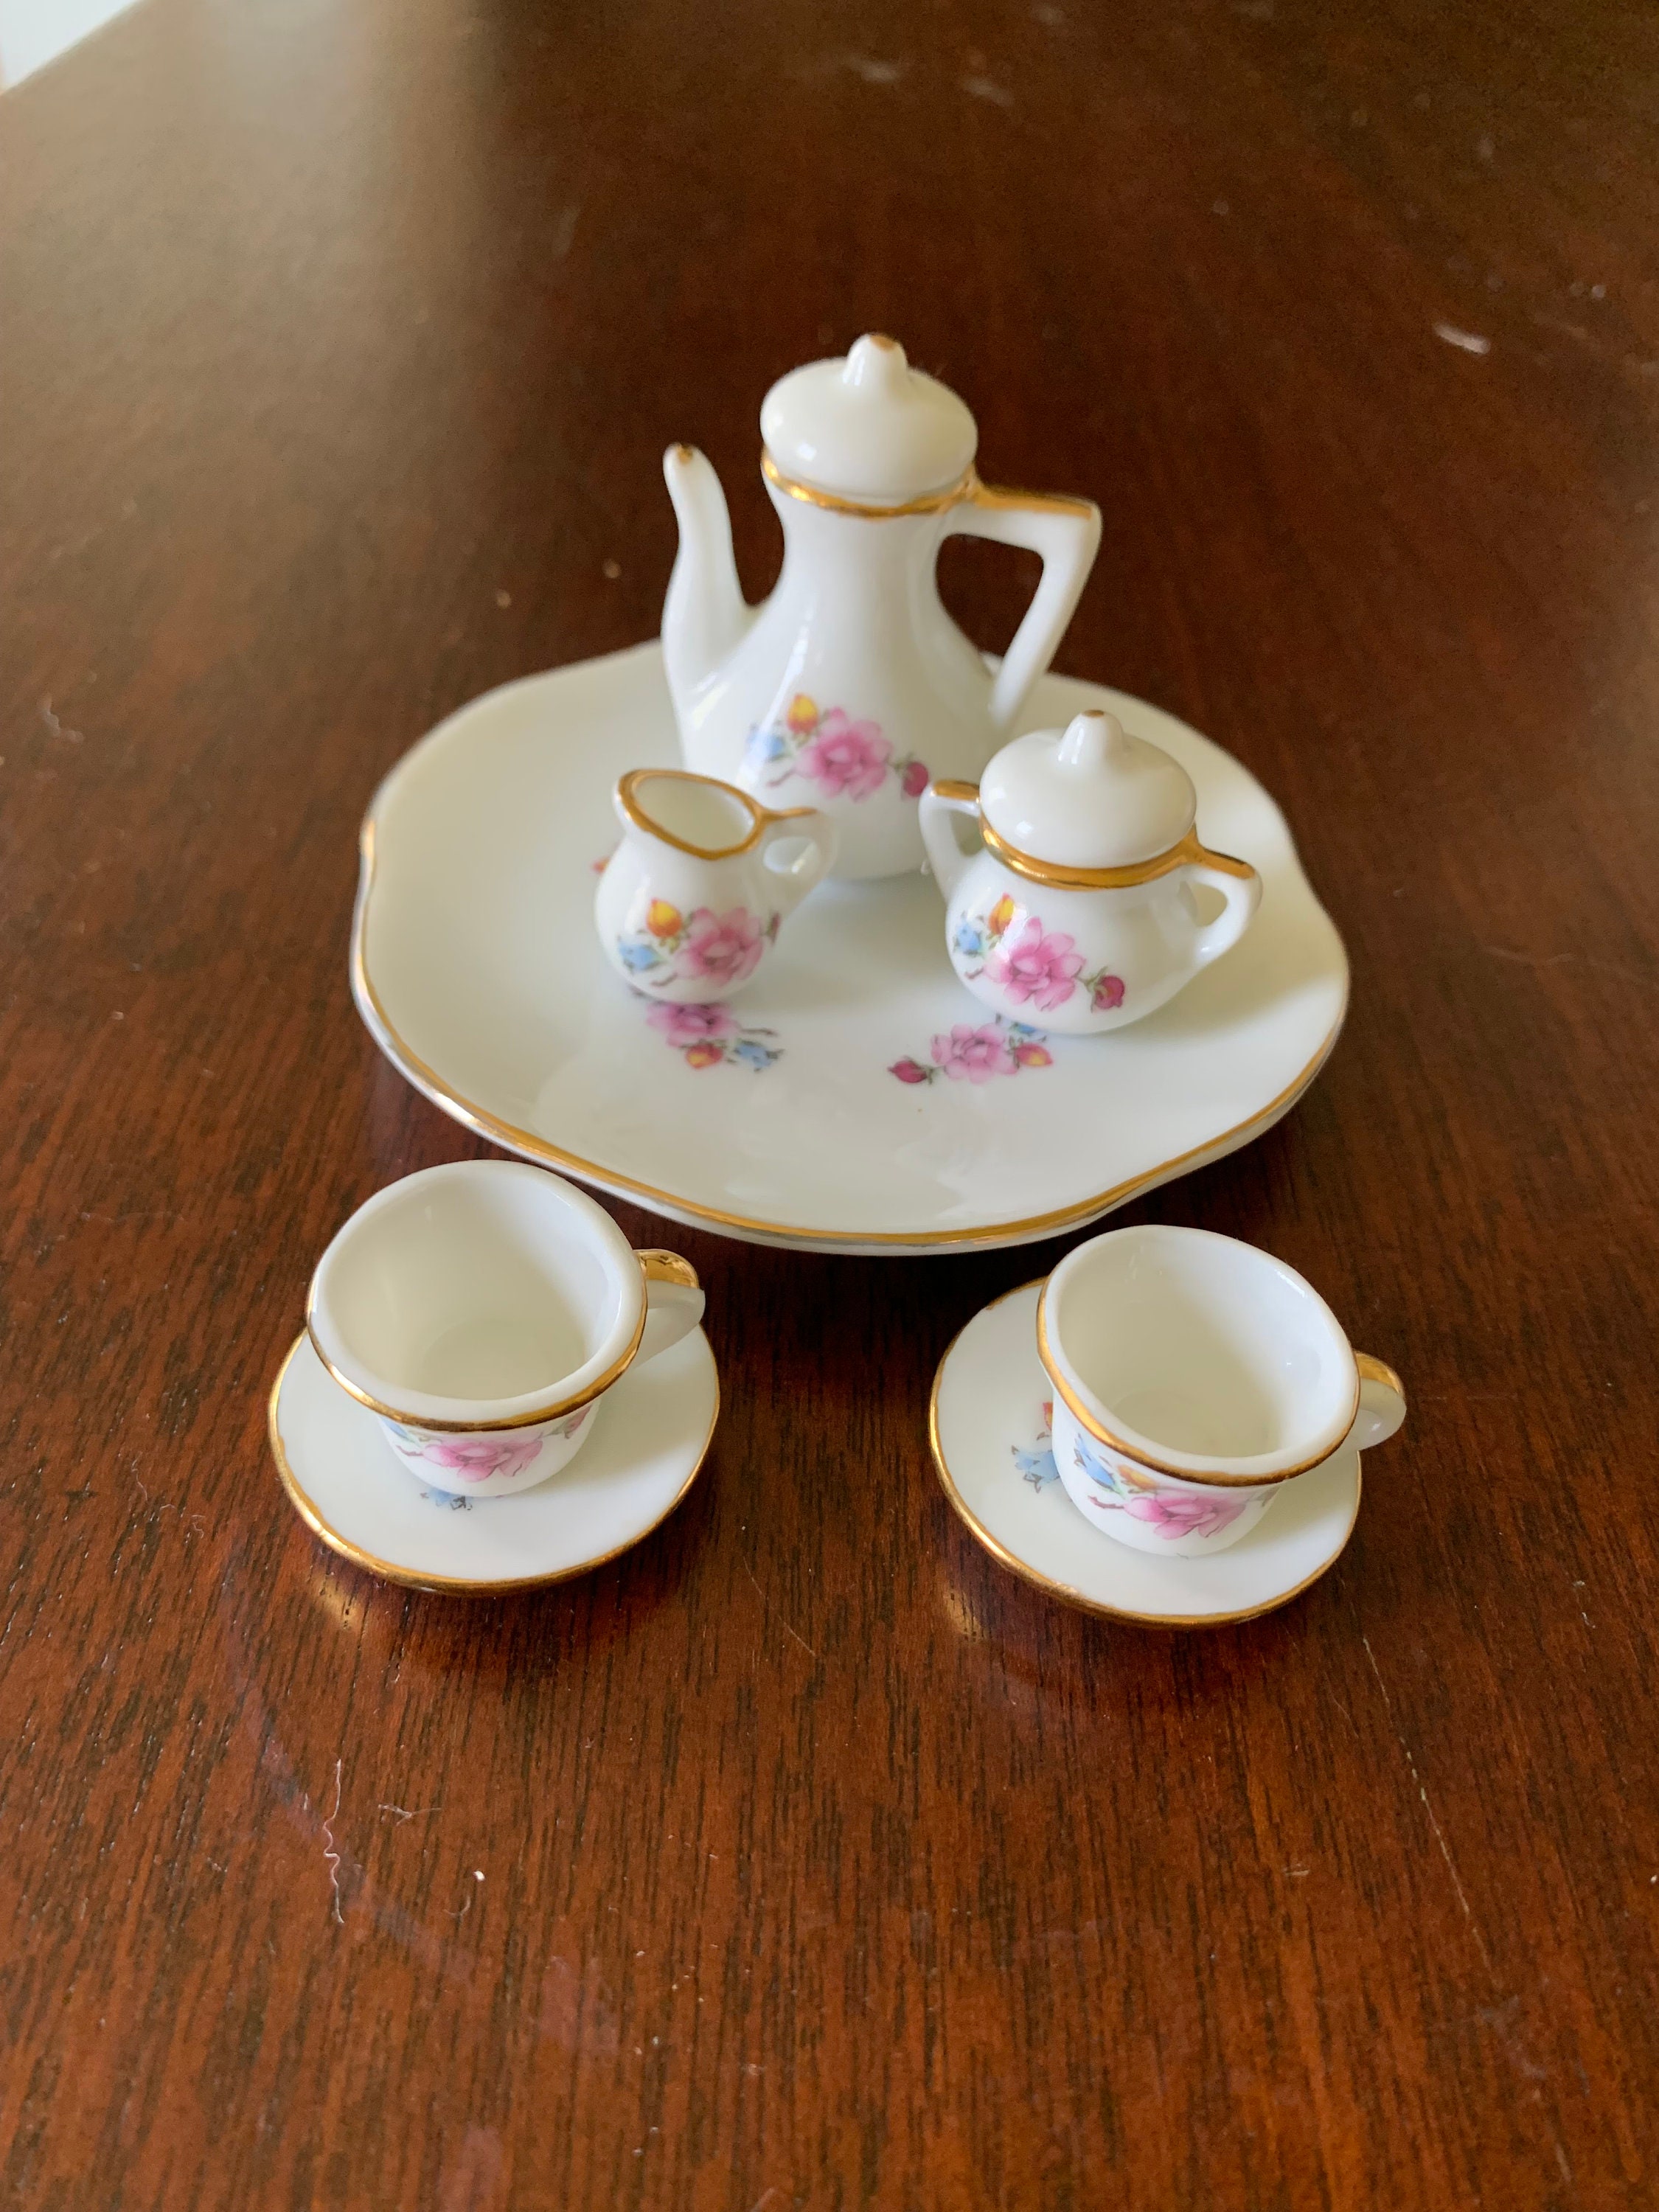 Hobby Lobby had the cutest mini tea pots… 🫖🥺 : r/DunderMifflin